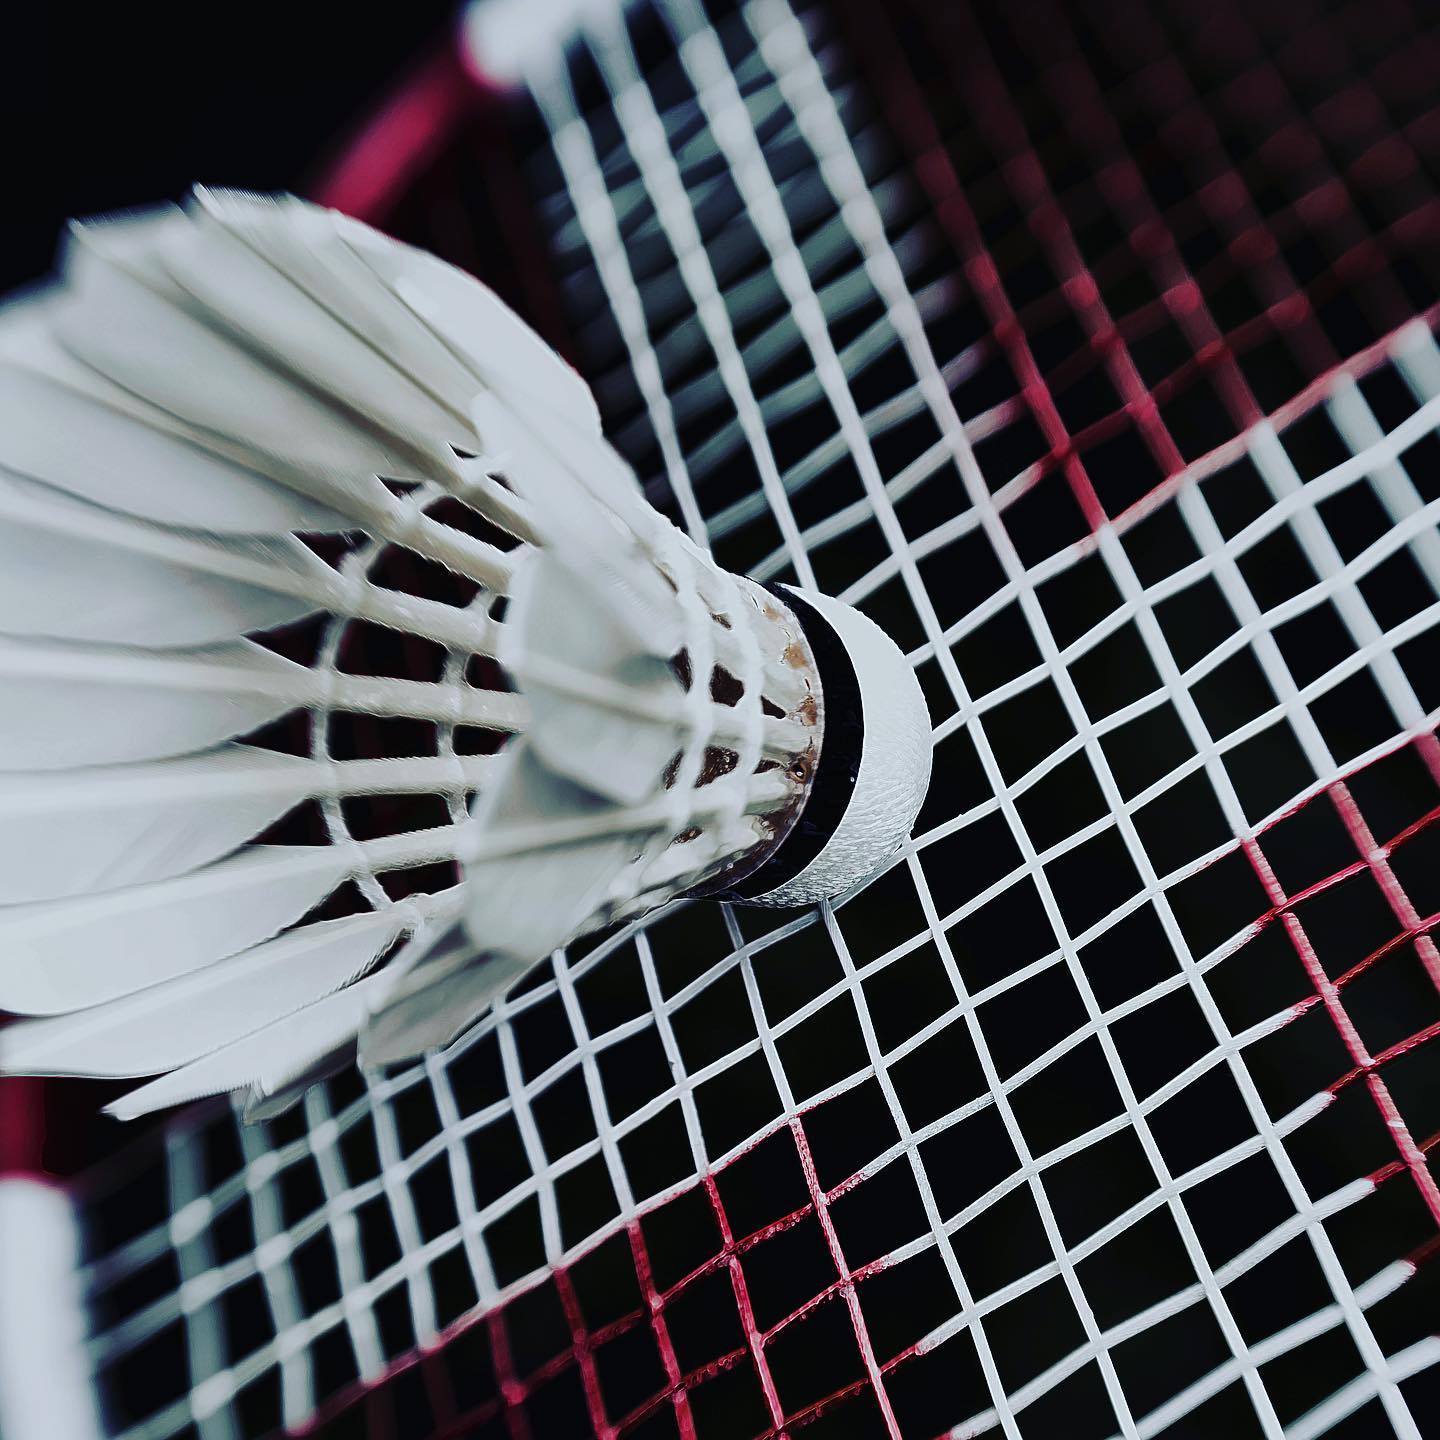 Le @bcvevey organisera un tournoi des Swiss Badminton Junior Series le weekend du 2-3 avril 2022. Les jeunes joueuses et joueurs du pays (U13, U15, U17 et U19) s’affronteront dans les disciplines des doubles. Les inscriptions sont ouvertes jusqu’au 6 mars 2022 via le site de Swiss Badminton. #swissbadmintonjuniorseries